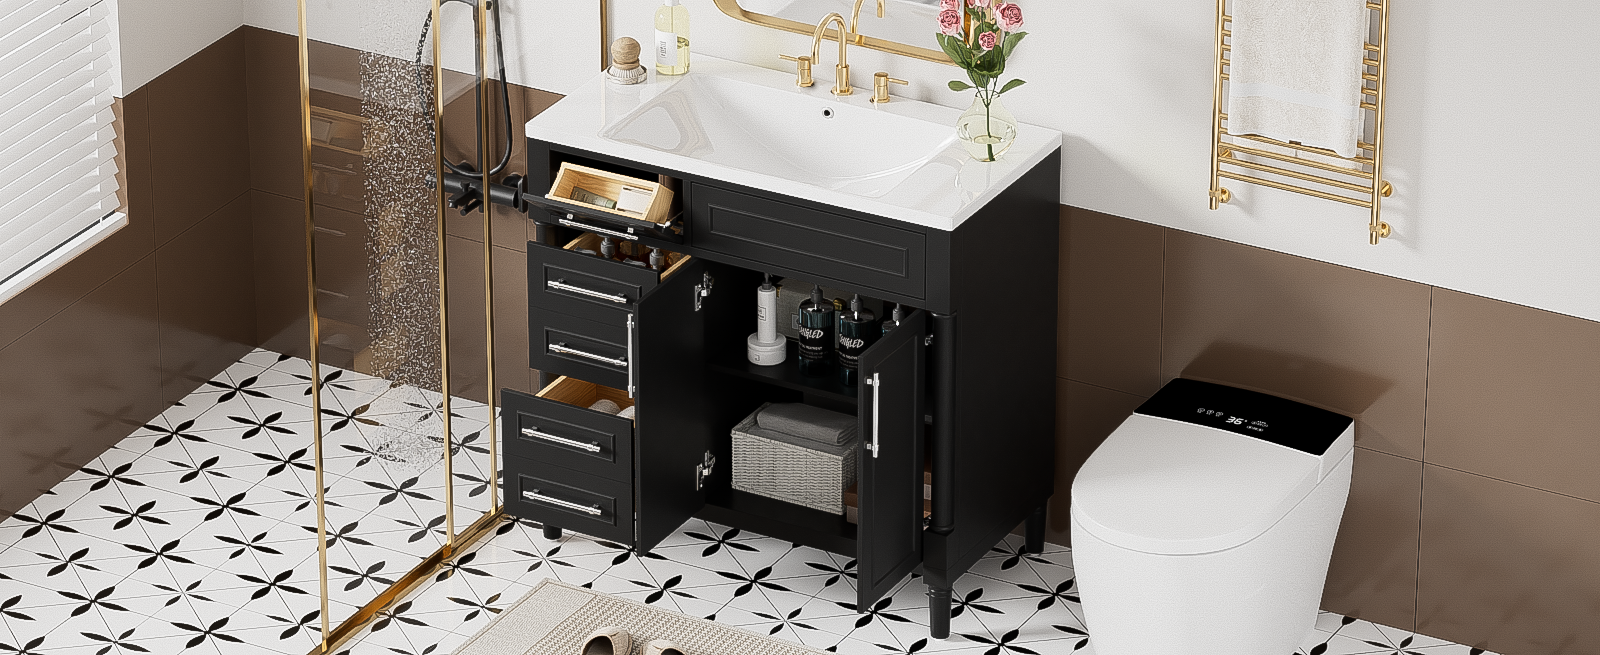 36'' Bathroom Vanity With Top Resin Sink,